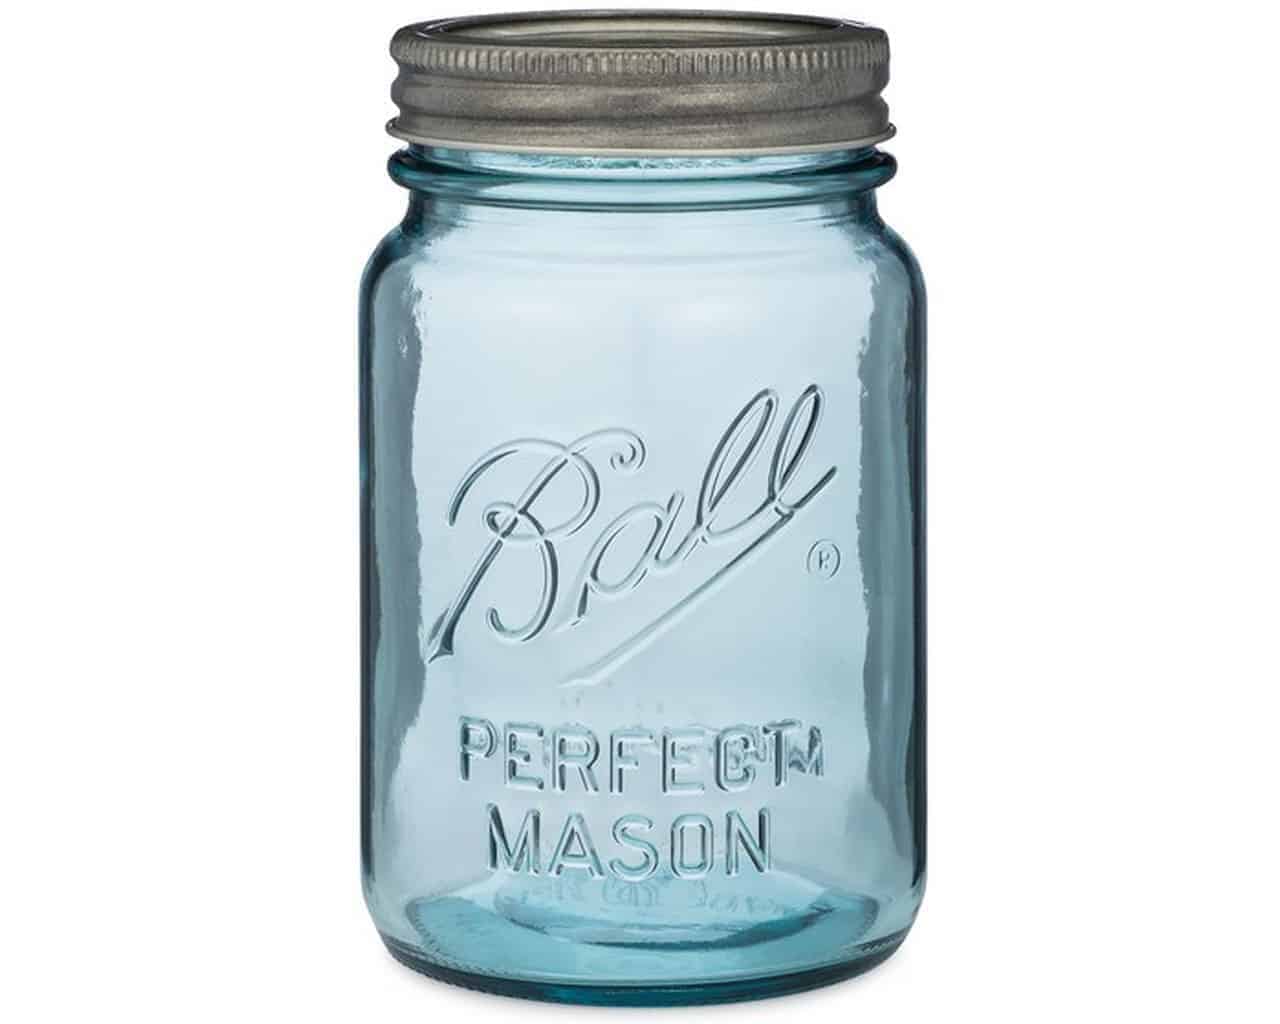 ball-collectors-edition-aqua-blue-pint-16oz-regular-mouth-mason-jar